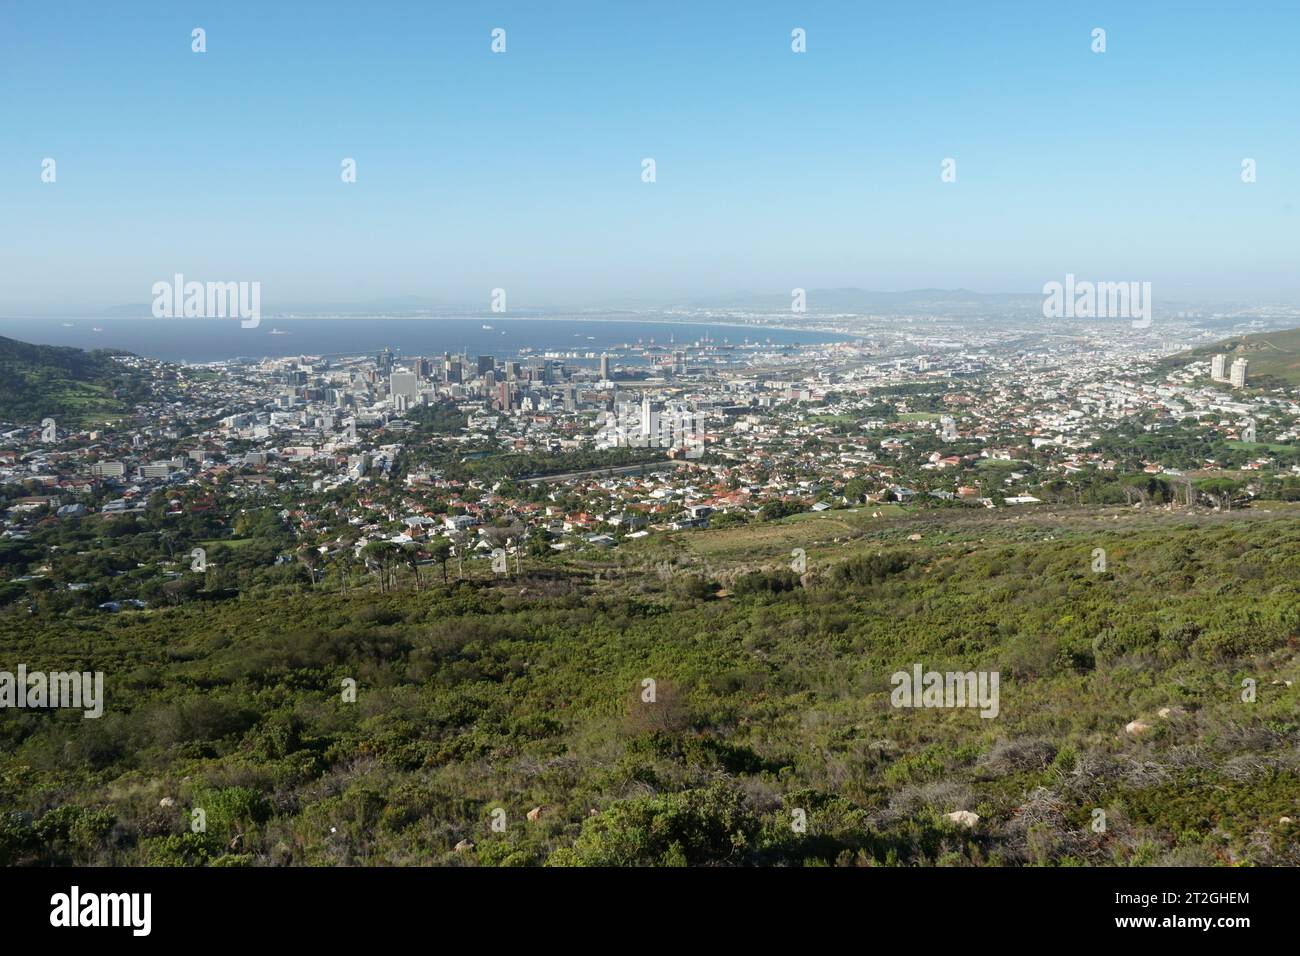 Vista panoramica di città del Capo e dell'oceano Atlantico dai piedi della Table Mountain ricoperta da prati verdi e cespugli. Foto Stock